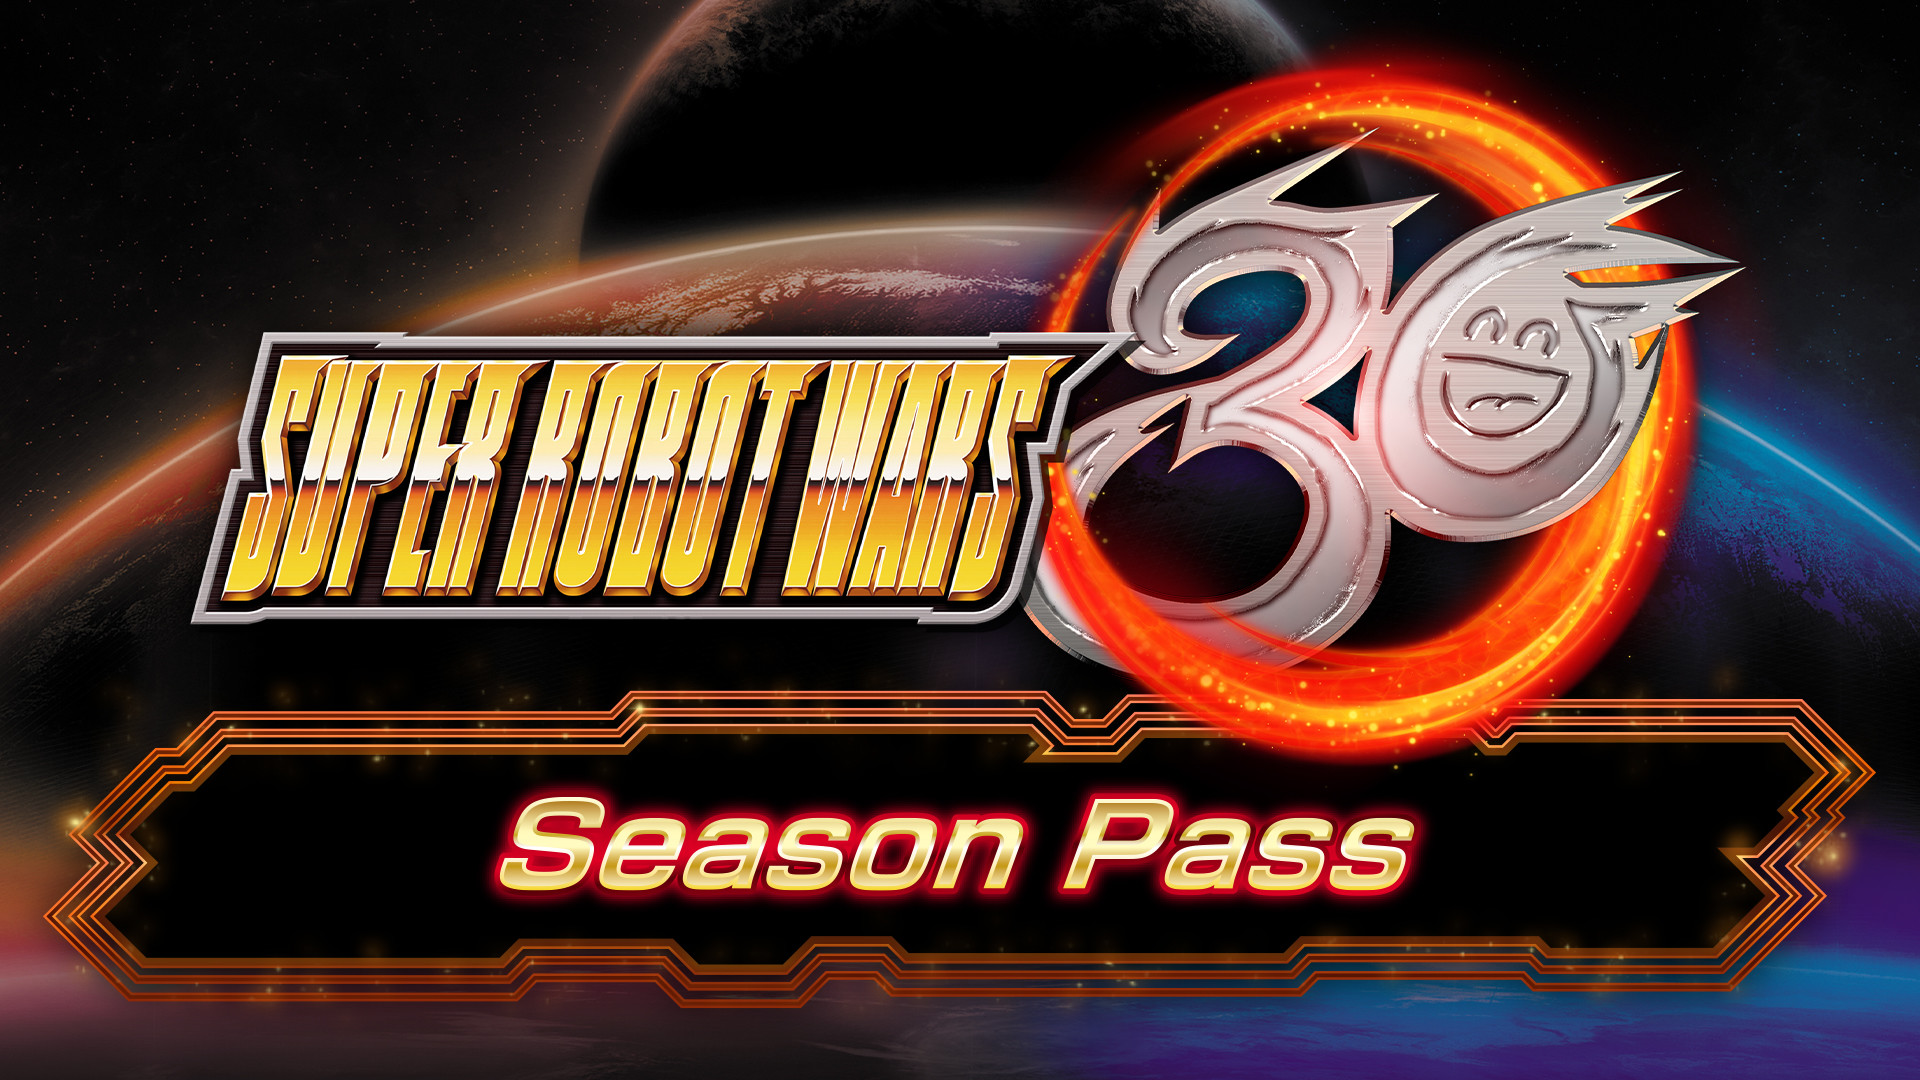 Super Robot Wars 30 - Season Pass Steam CD Key, $13.54